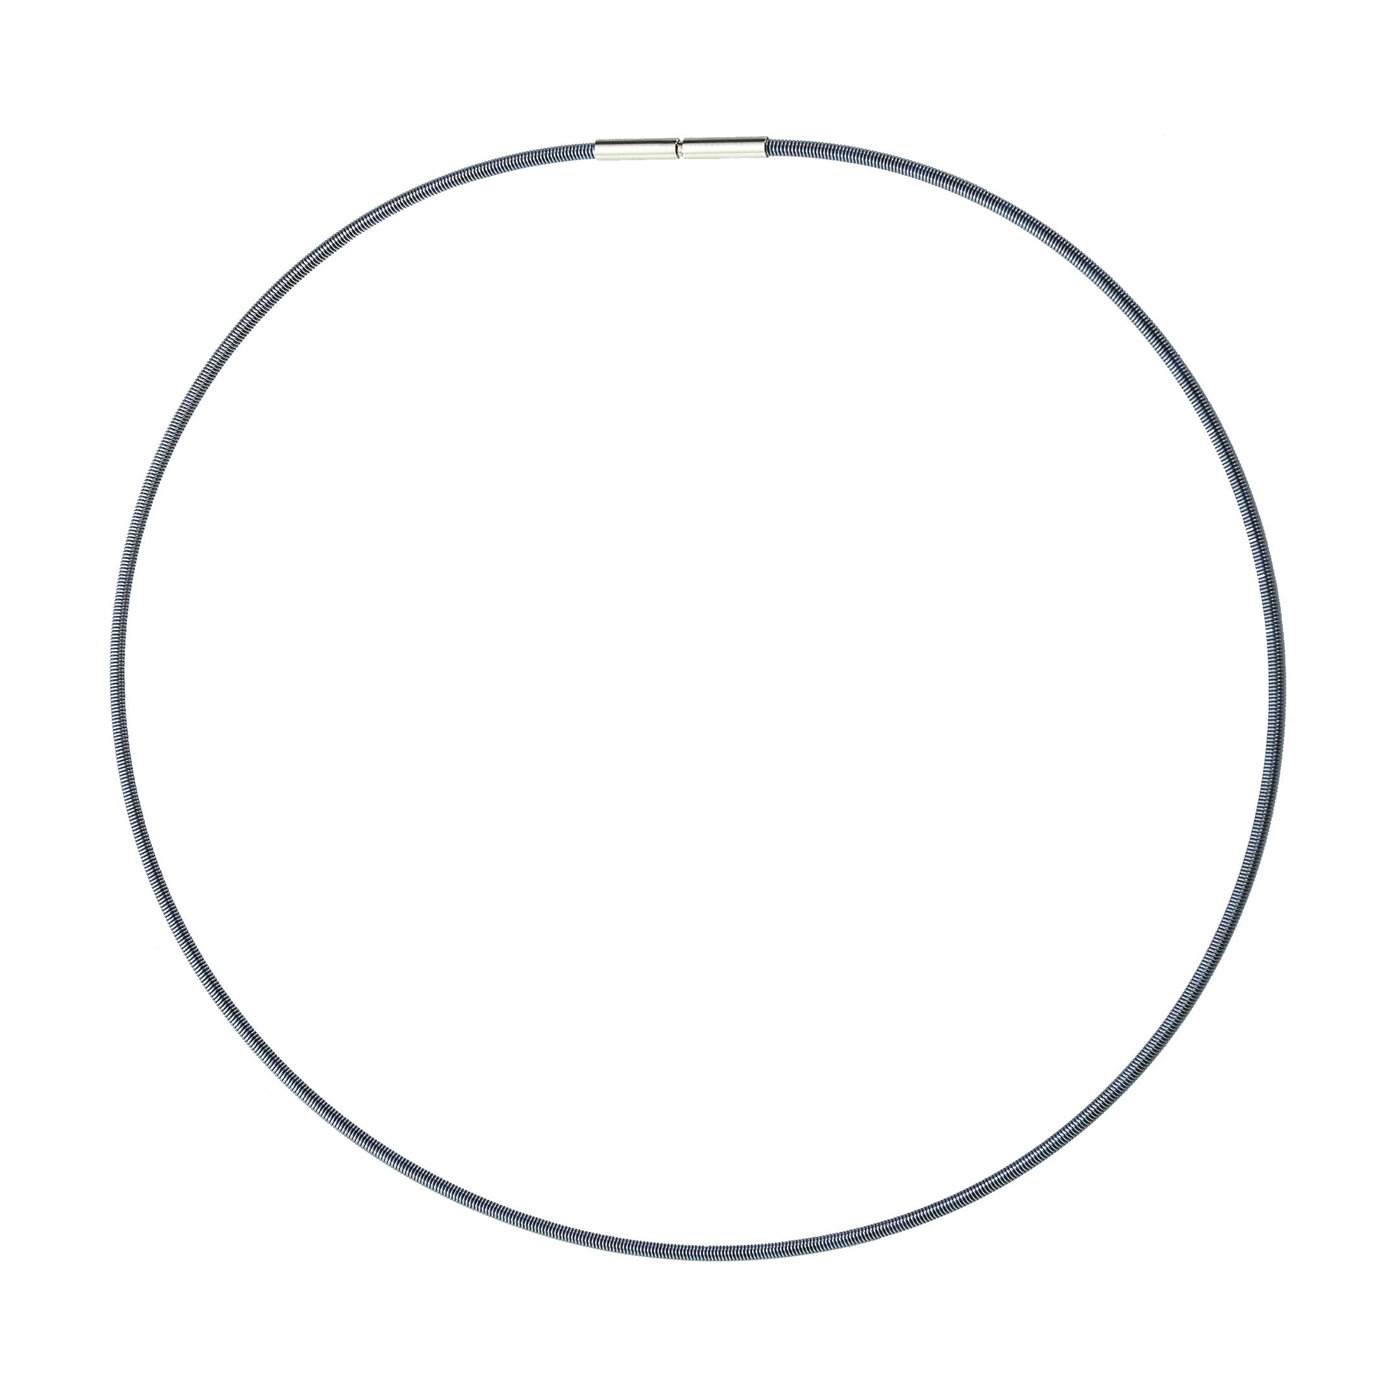 Soft Spiral, Montana Blue, ø 2 mm, 42 cm - 1 piece